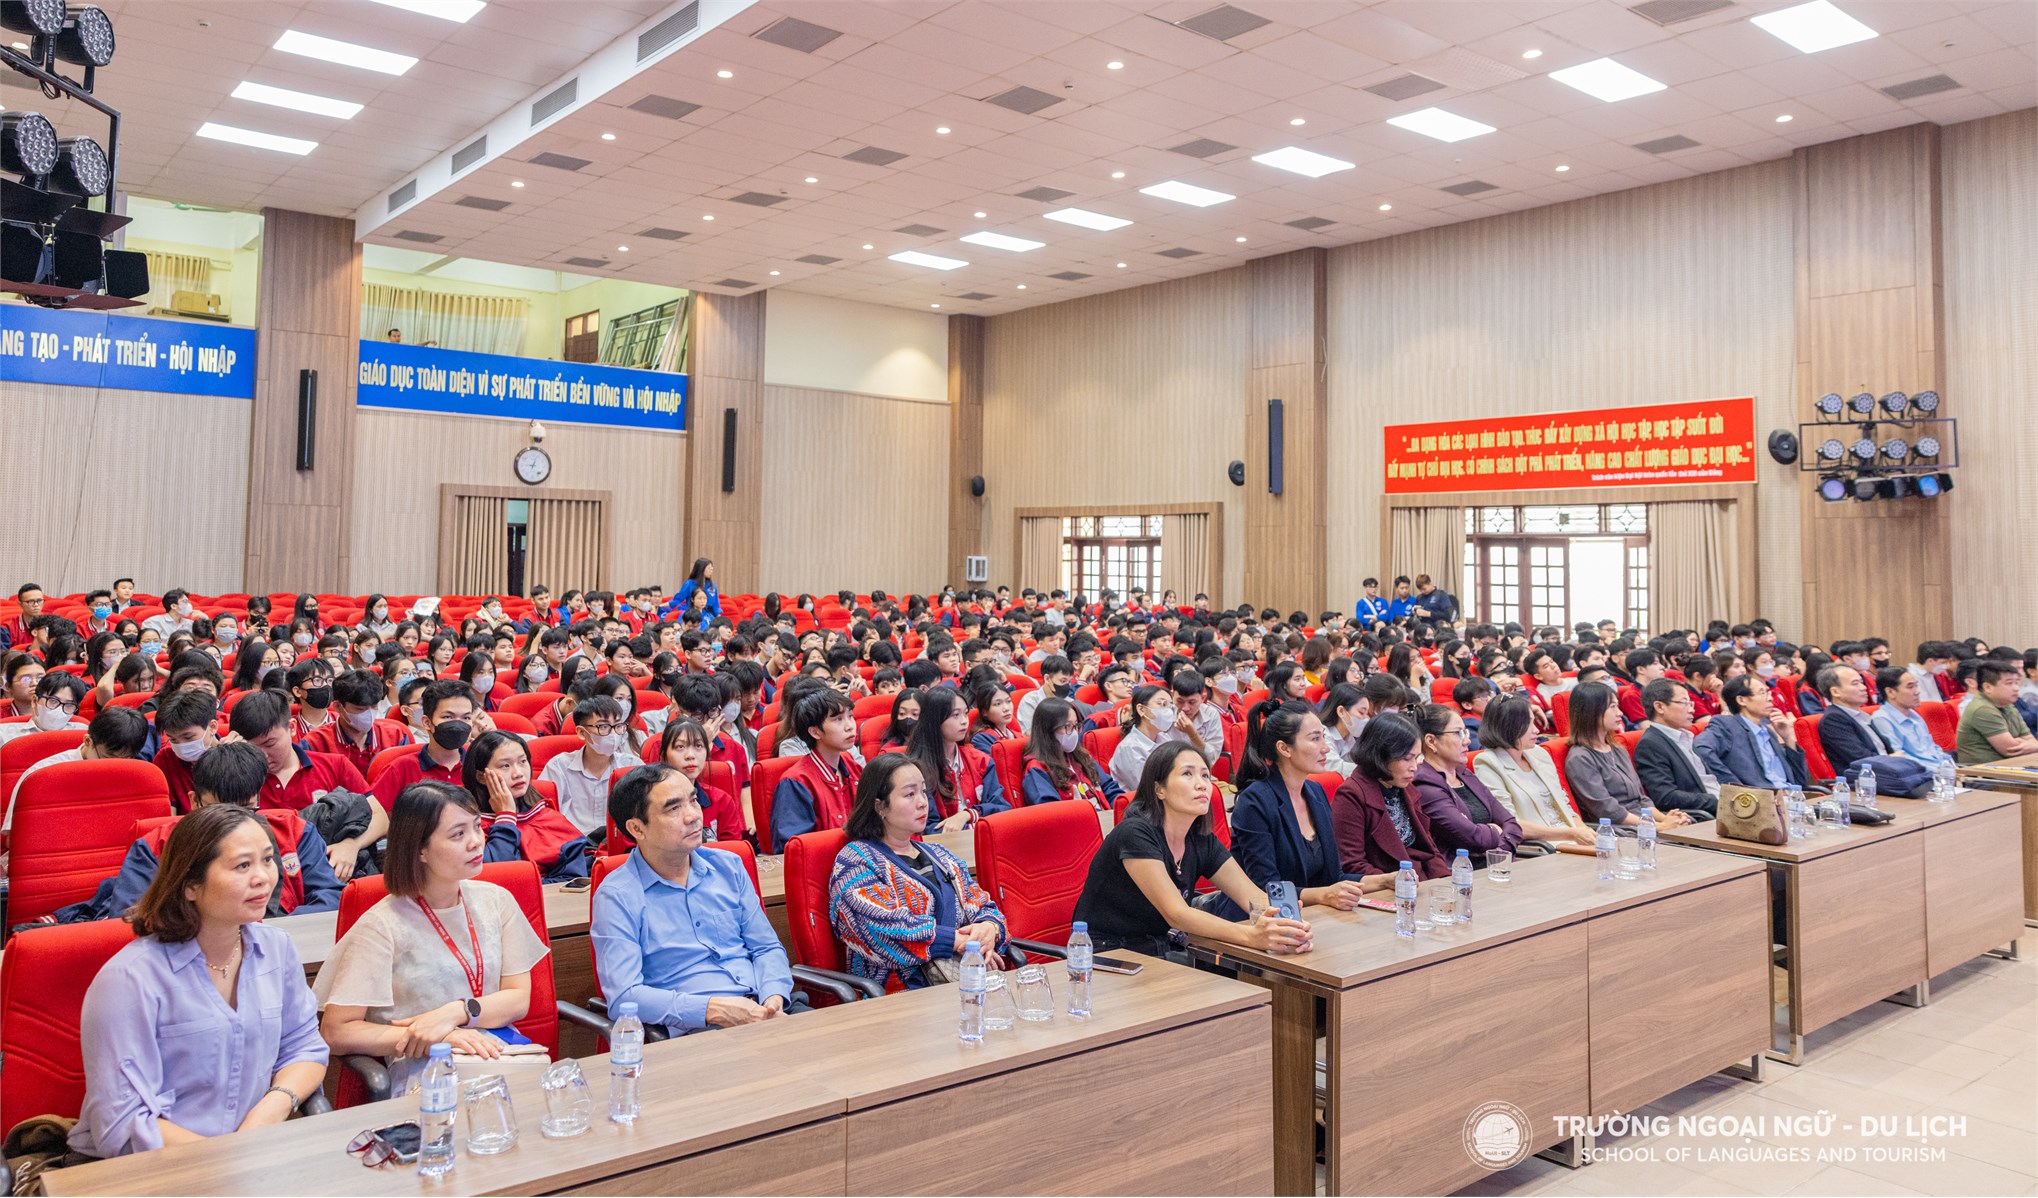 Đại học Công nghiệp Hà Nội đón gần 400 thầy cô, phụ huynh và học sinh Trường THPT Phùng Khắc Khoan, Đống Đa, Hà Nội